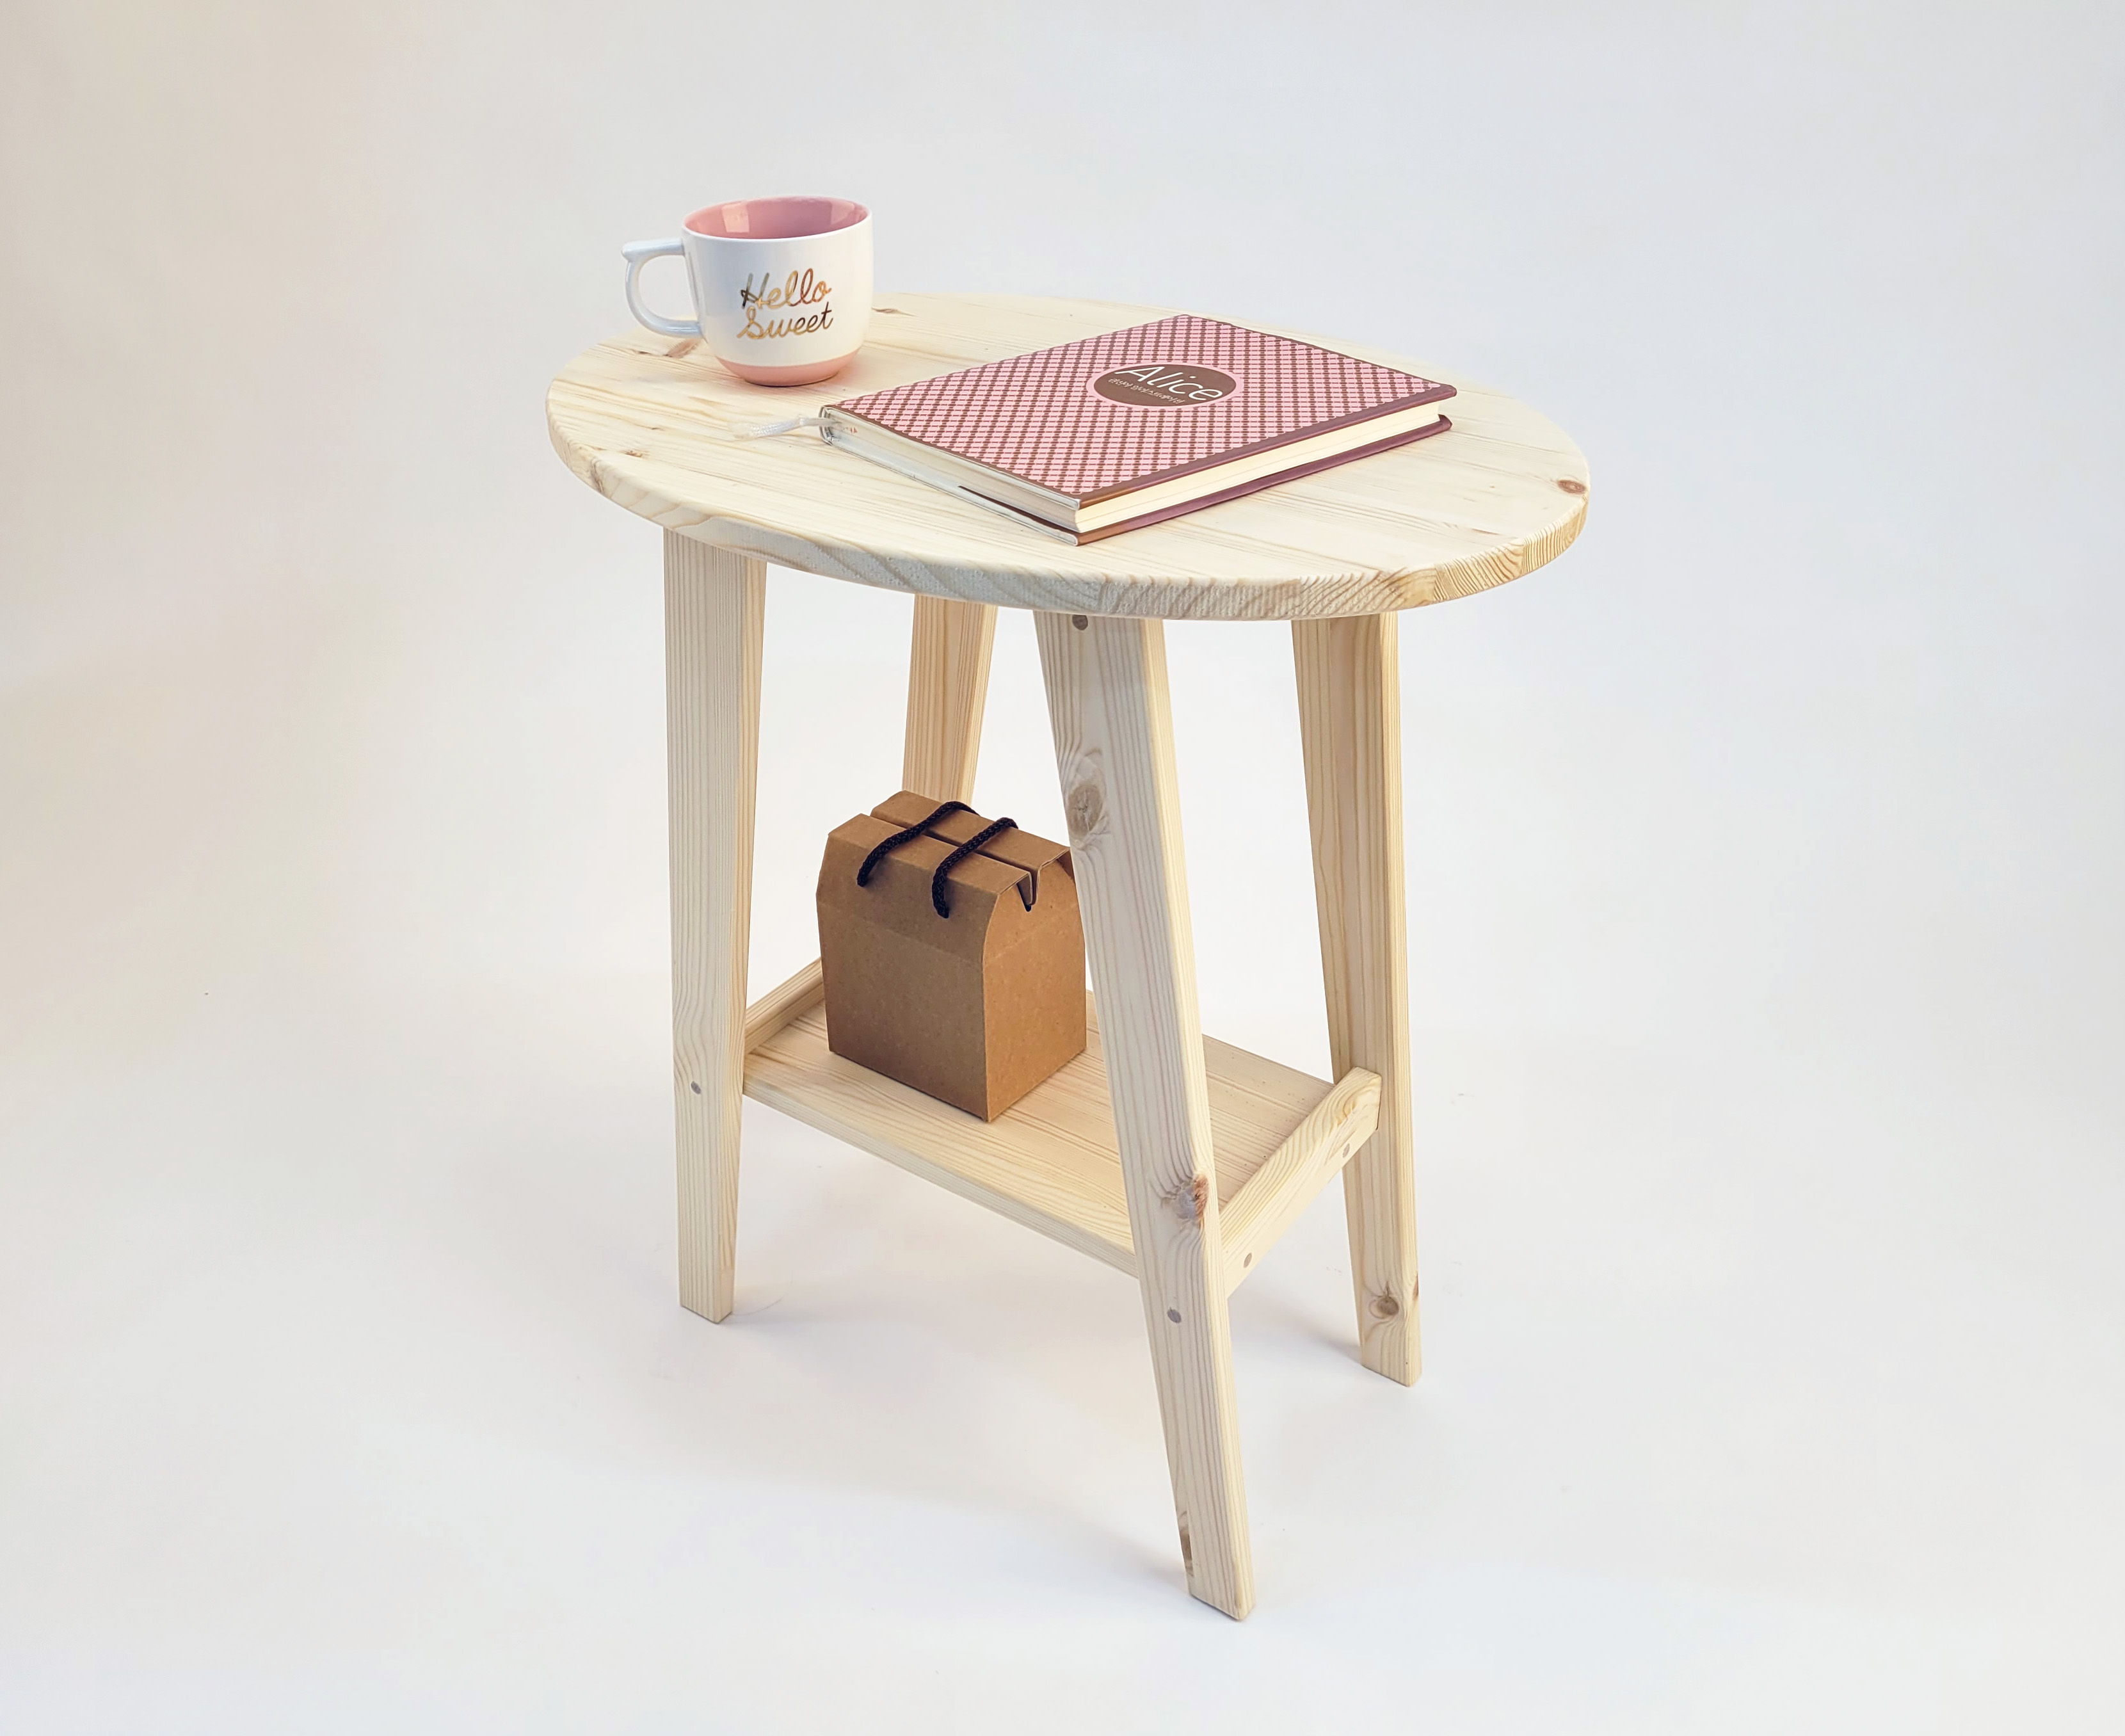 키 크고 슬림한 타원형 탁자입니다.
콤팩트 사이즈에 실용적인 하부 선반이 있어
커피 or 티 테이블, 독서 테이블, 홈술 테이블, 사이드 테이블 등 
다용도로 쓸 수 있는 힙~한 테이블입니다.
